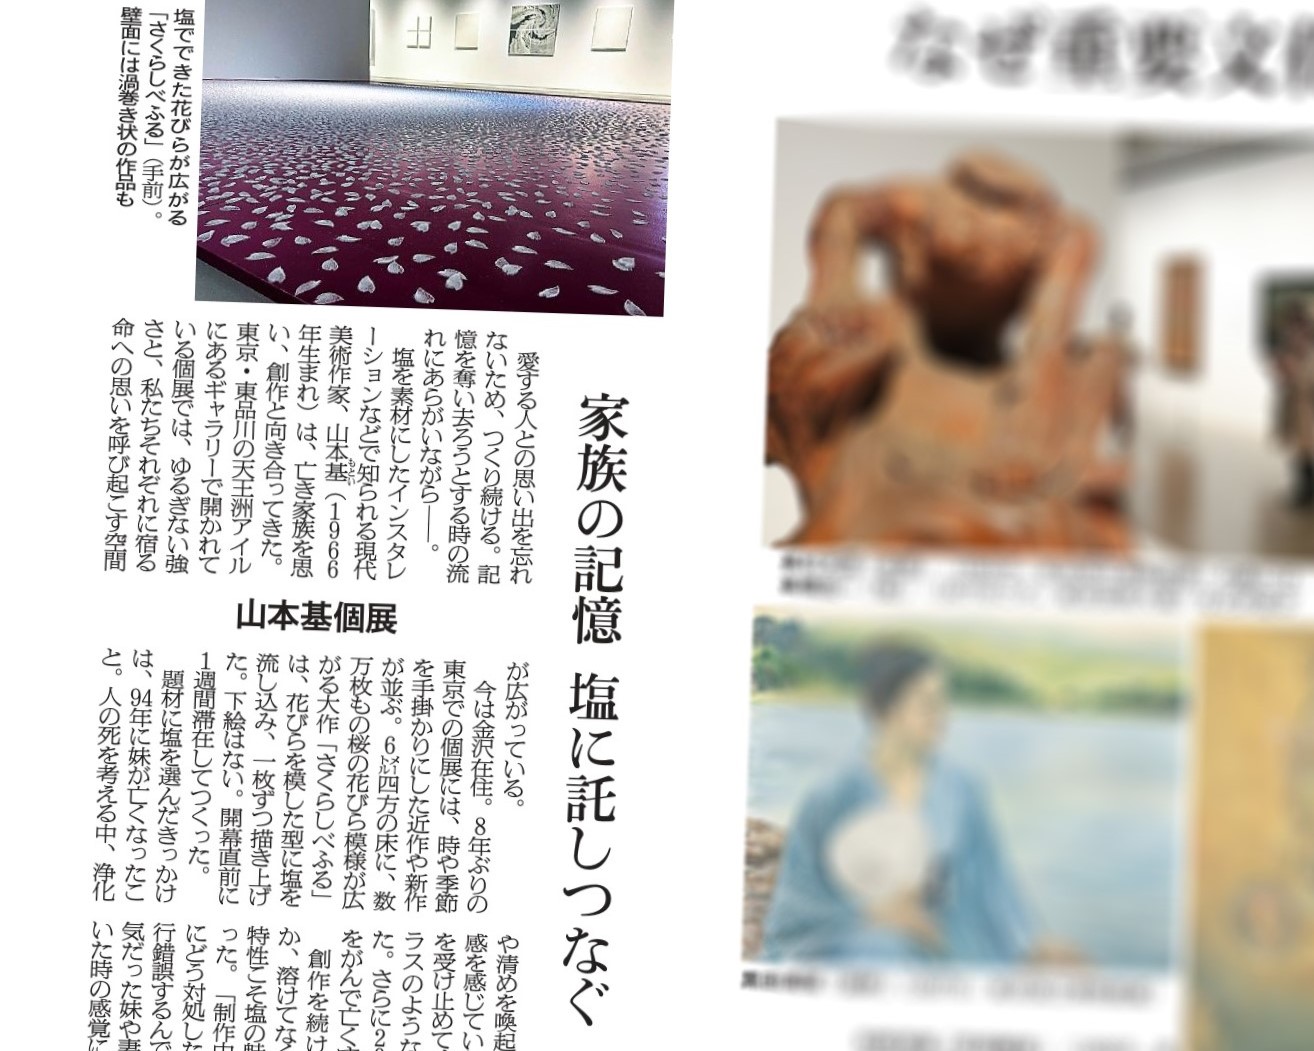 Asahi Shimbun　Motoi Yamamoto「時に宿る-Staying in Time-」